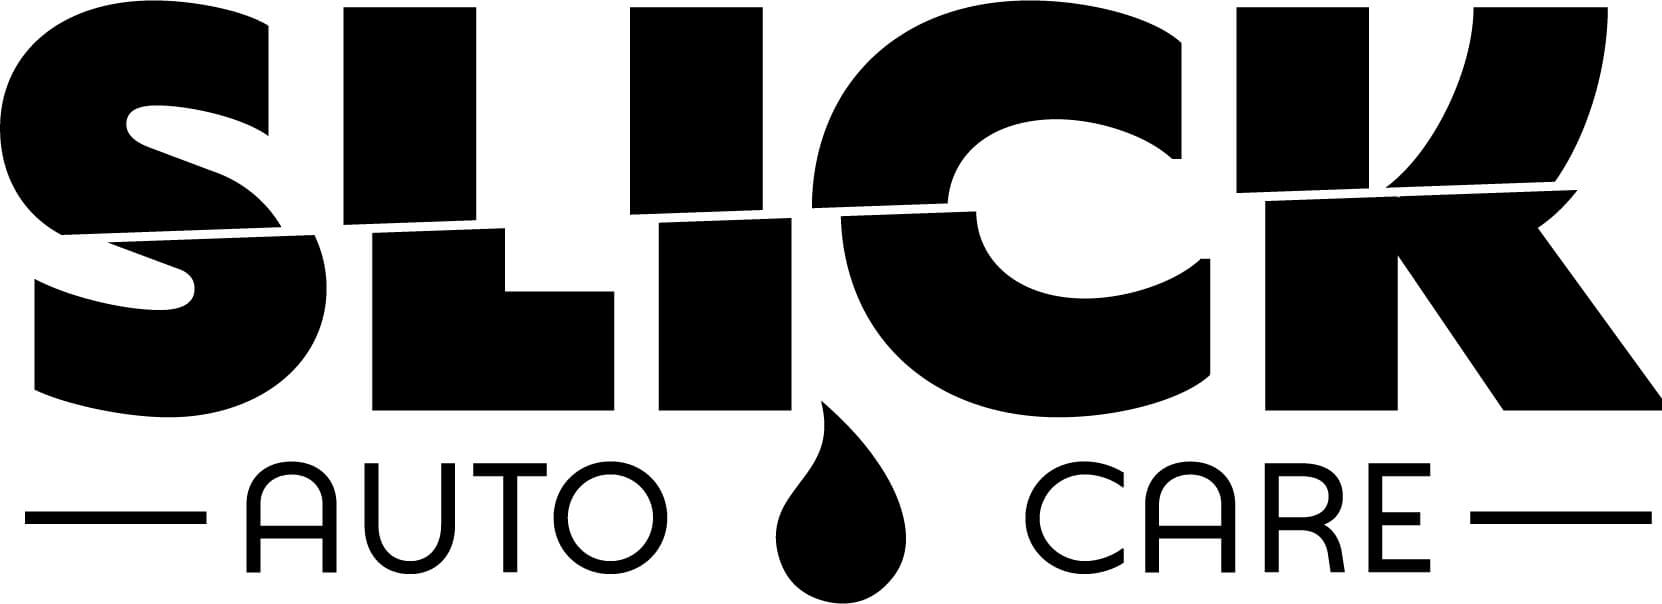 Slick Auto Care Black Logo Tranparent[15]